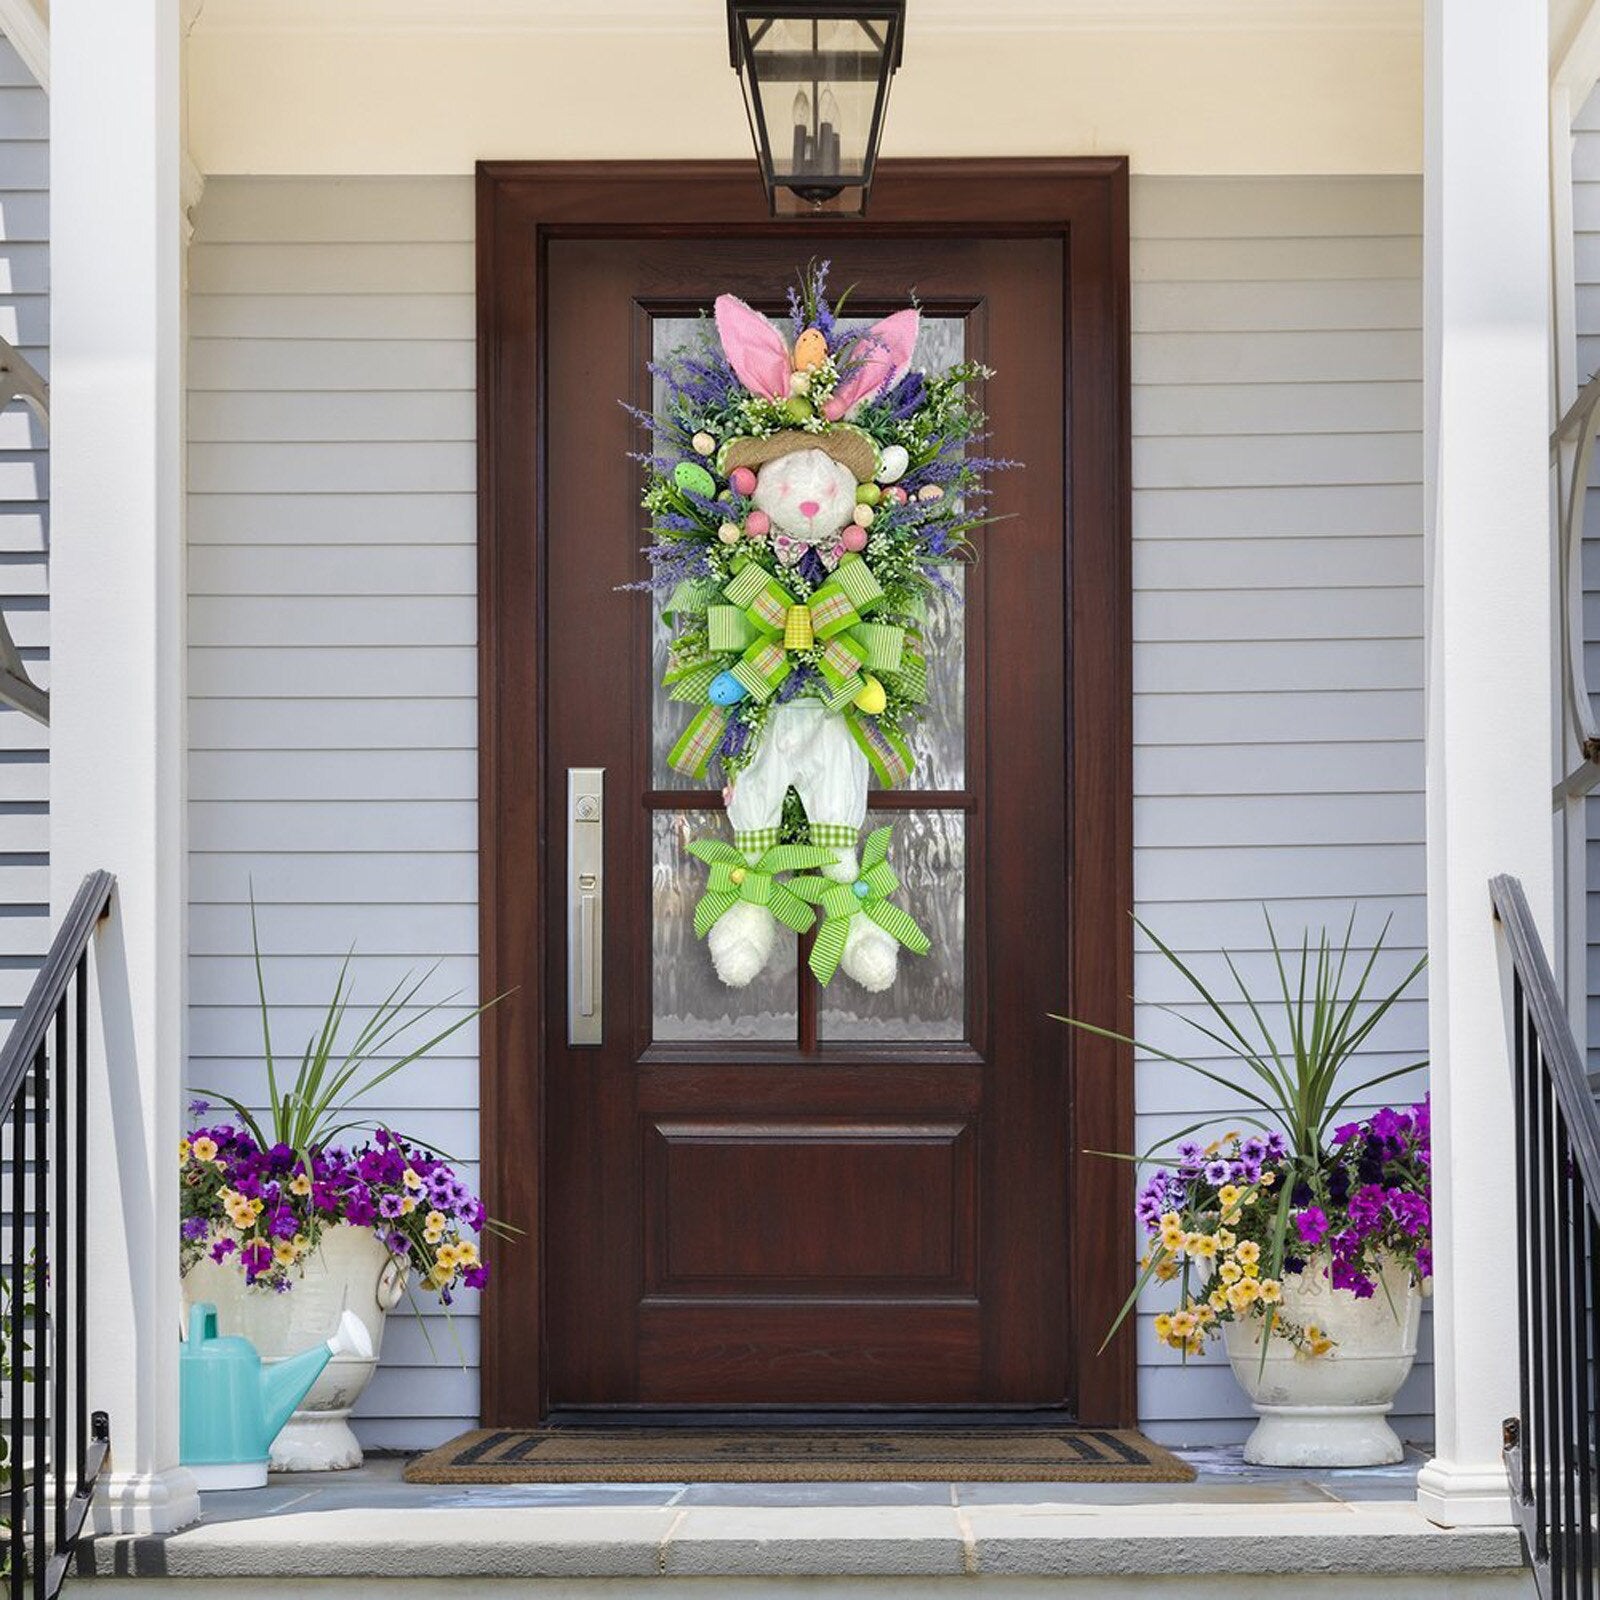 Spring Wreaths For Front Door: Spring Swags For Door - SKINMOZ MARKET